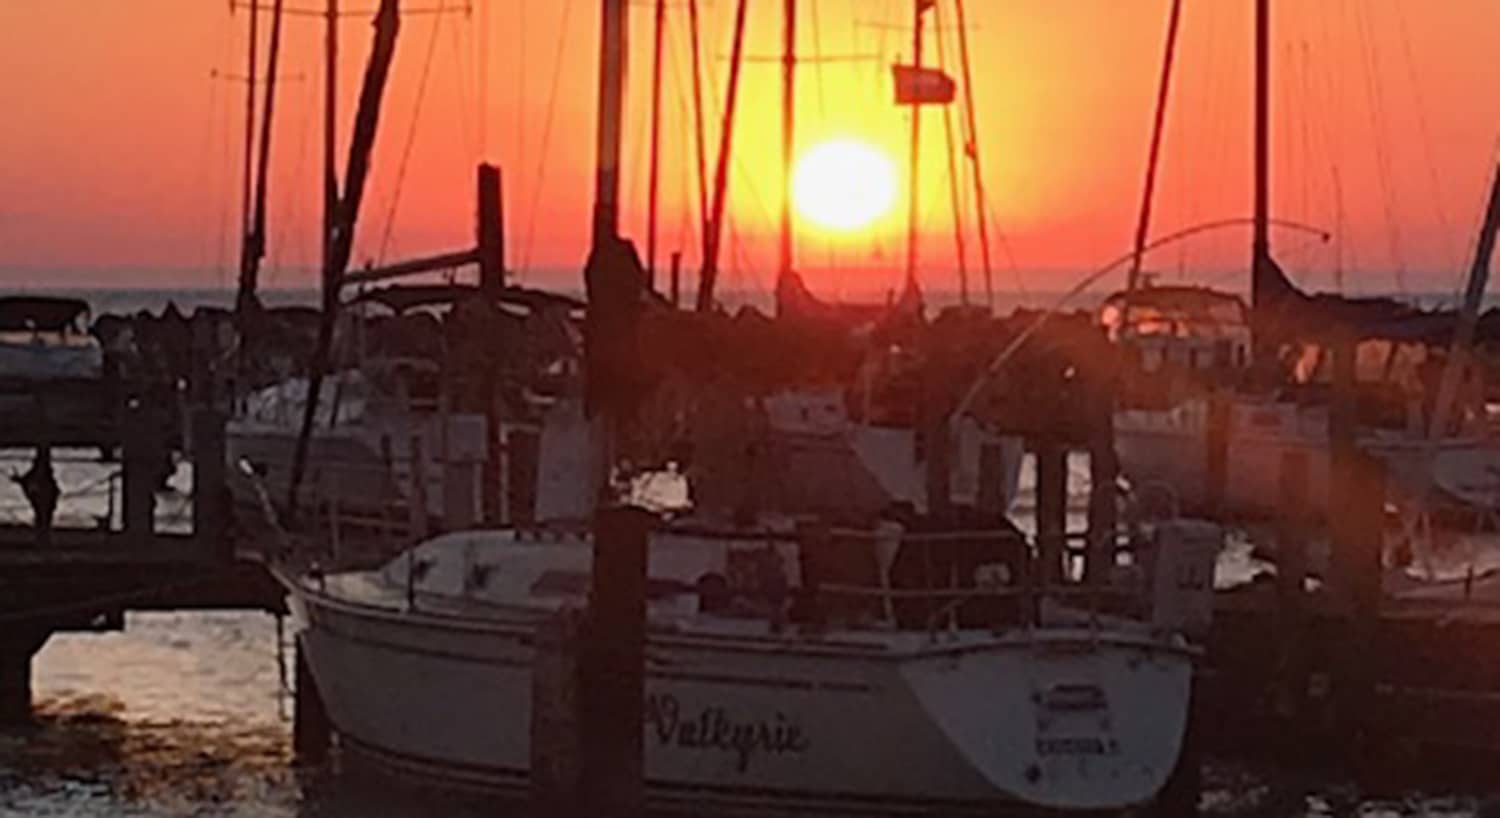 Sunset over sailboats at South Shore Yacht Club and Marina